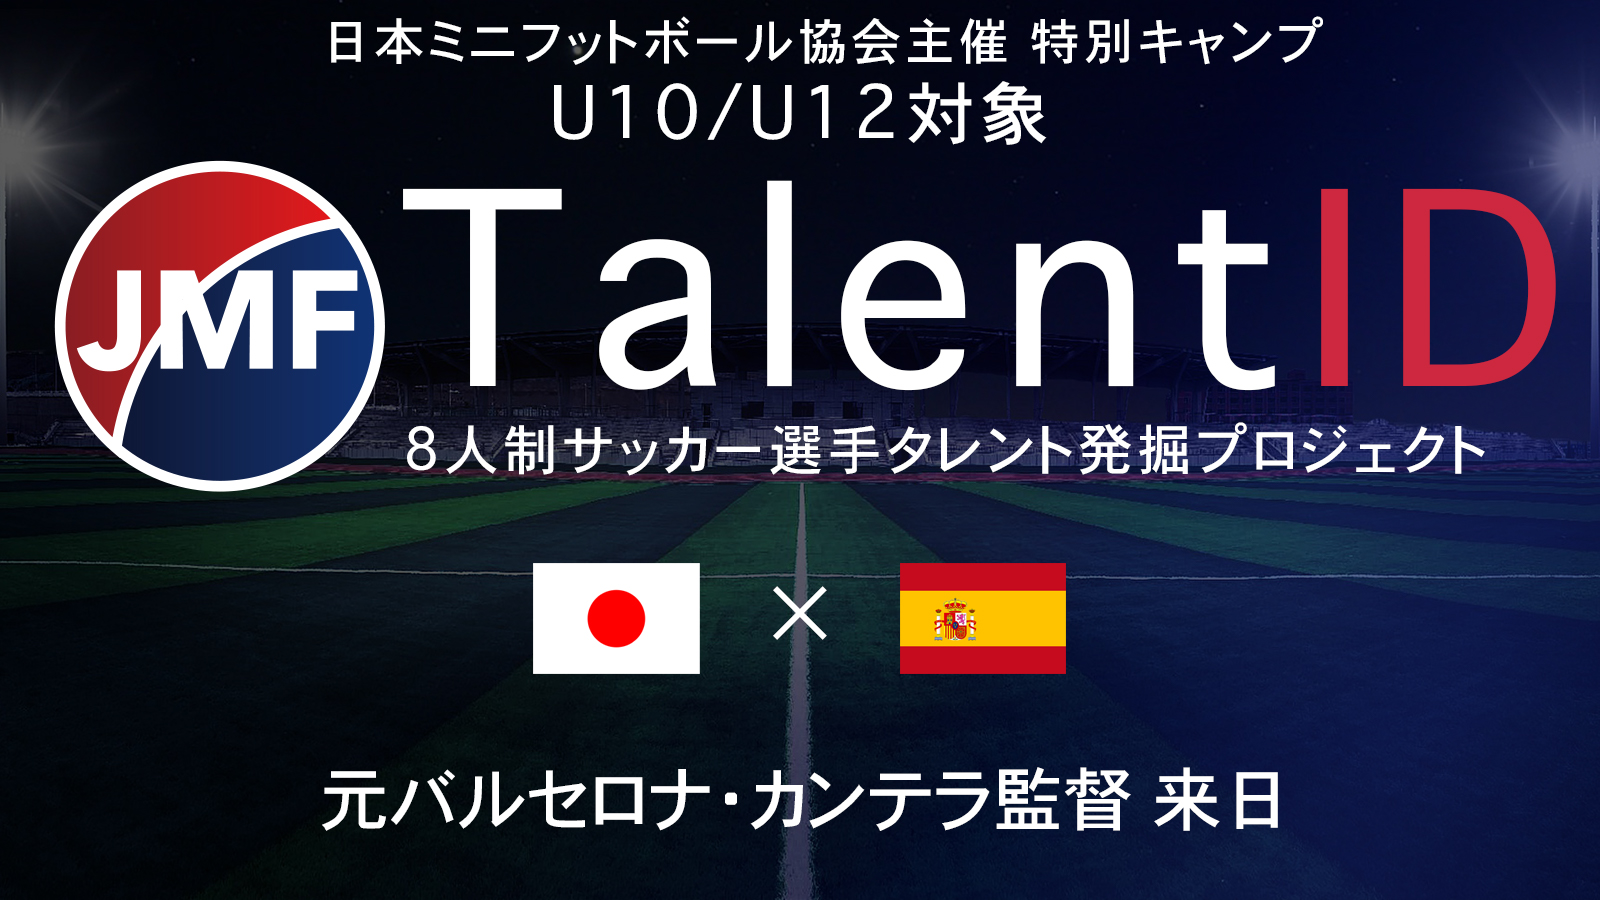 小学生対象 タレントidプロジェクトスタート 一般社団法人日本ミニフットボール協会のプレスリリース